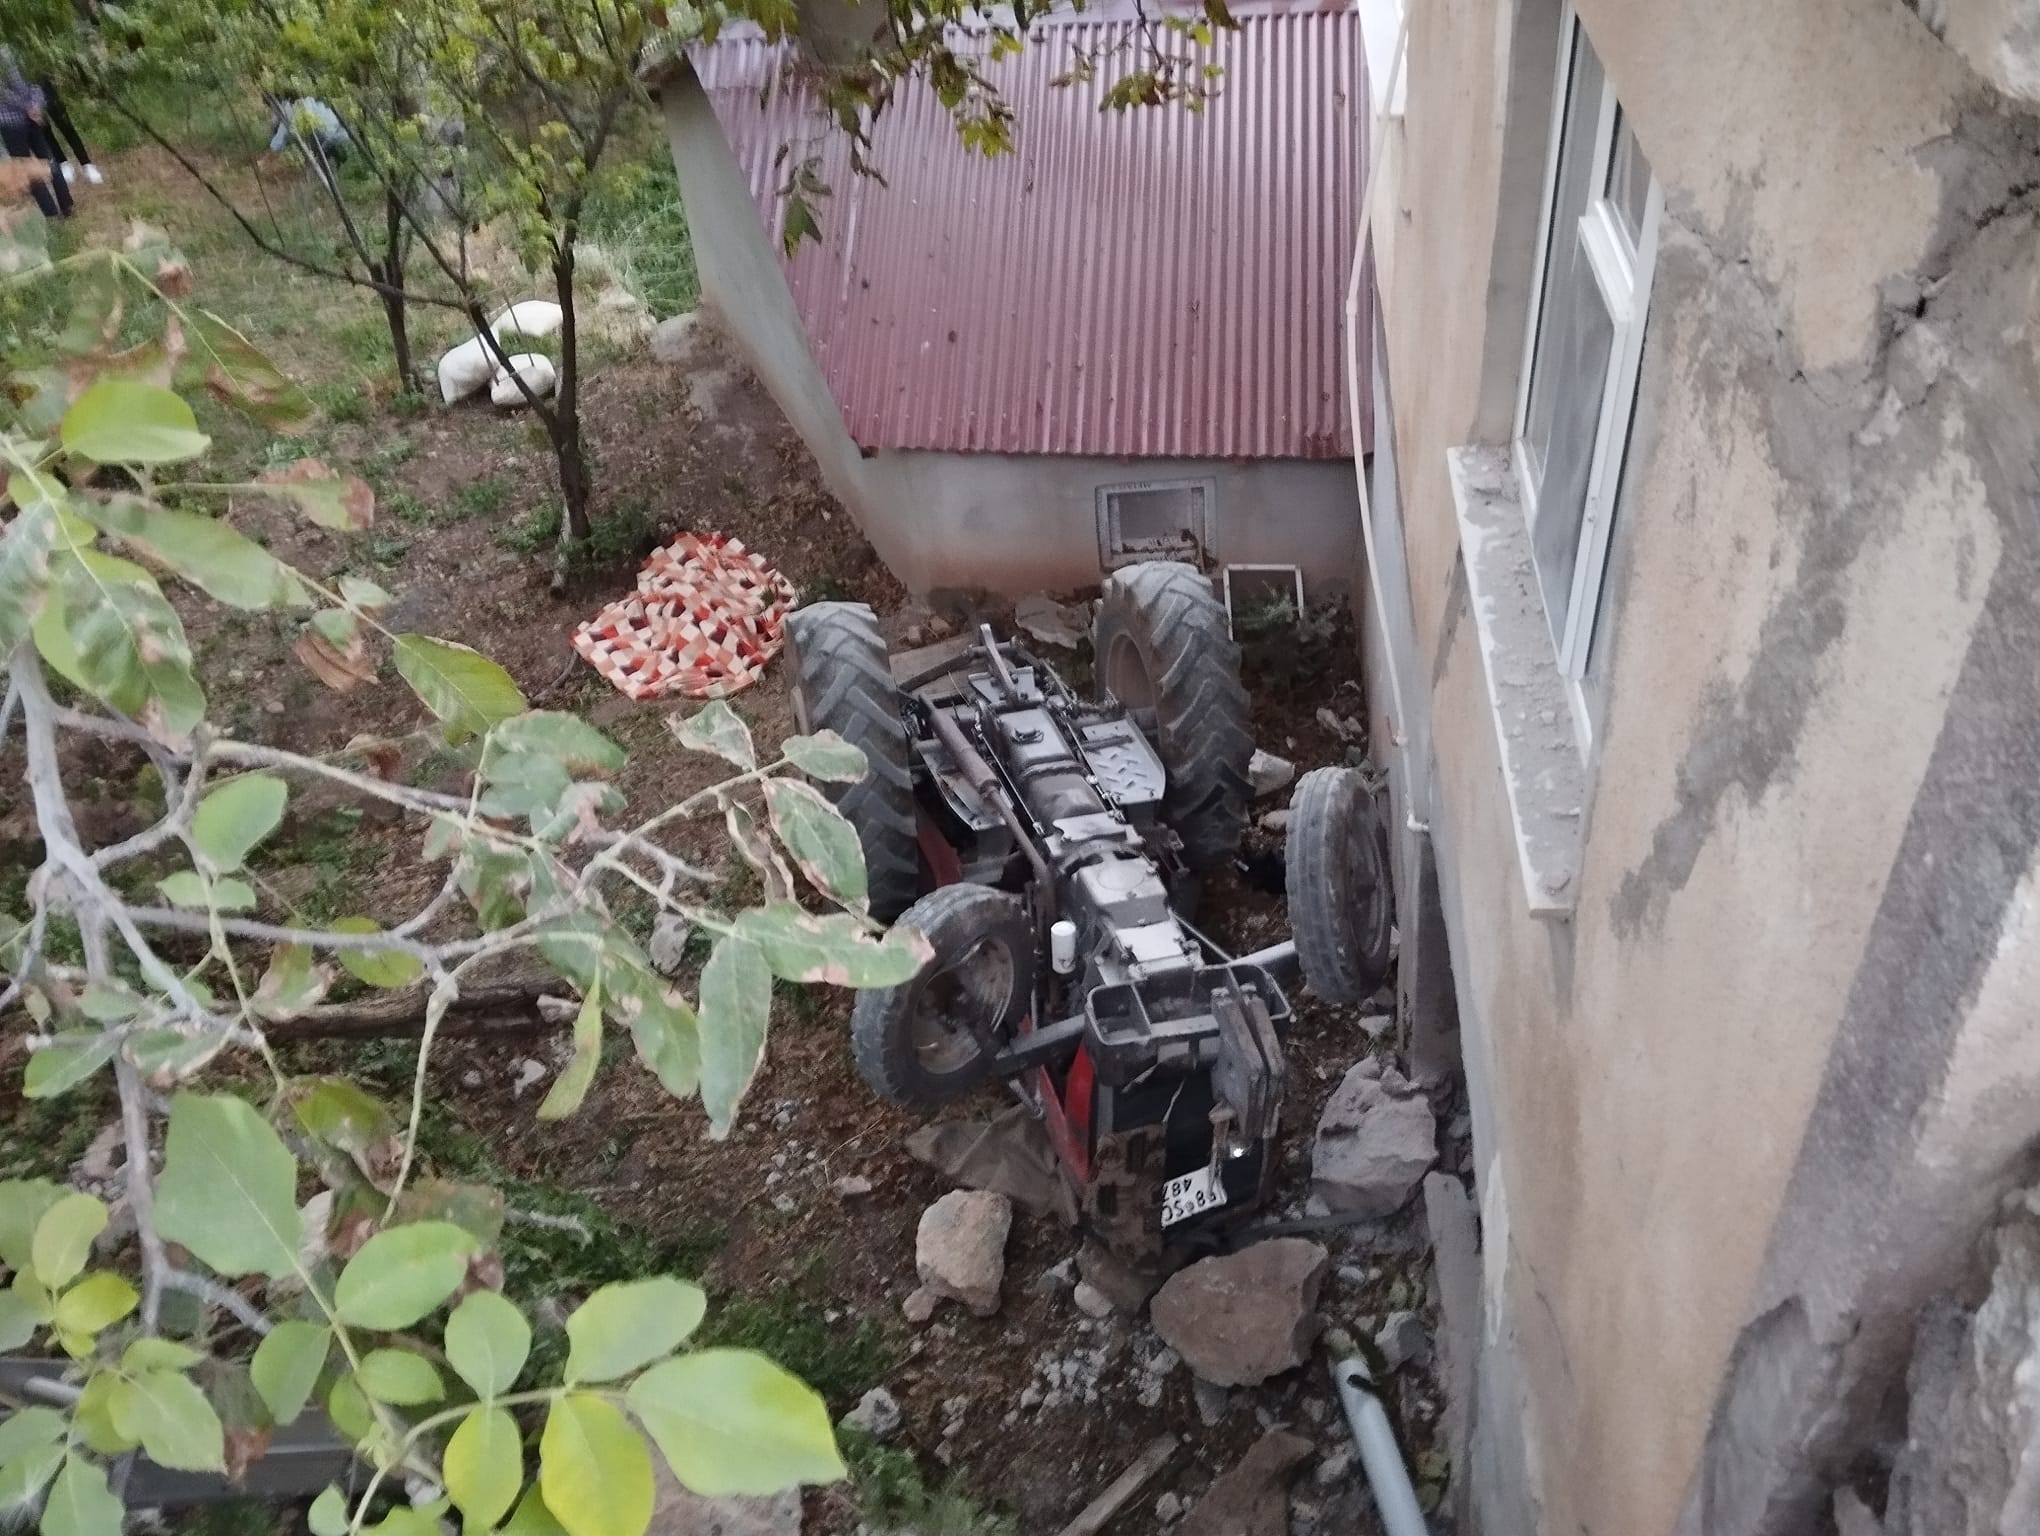 Sivas’ın Suşehri ilçesinde önce evin duvarına çarptı ardından 6 metreden bahçeye uçtu: 2 ölü